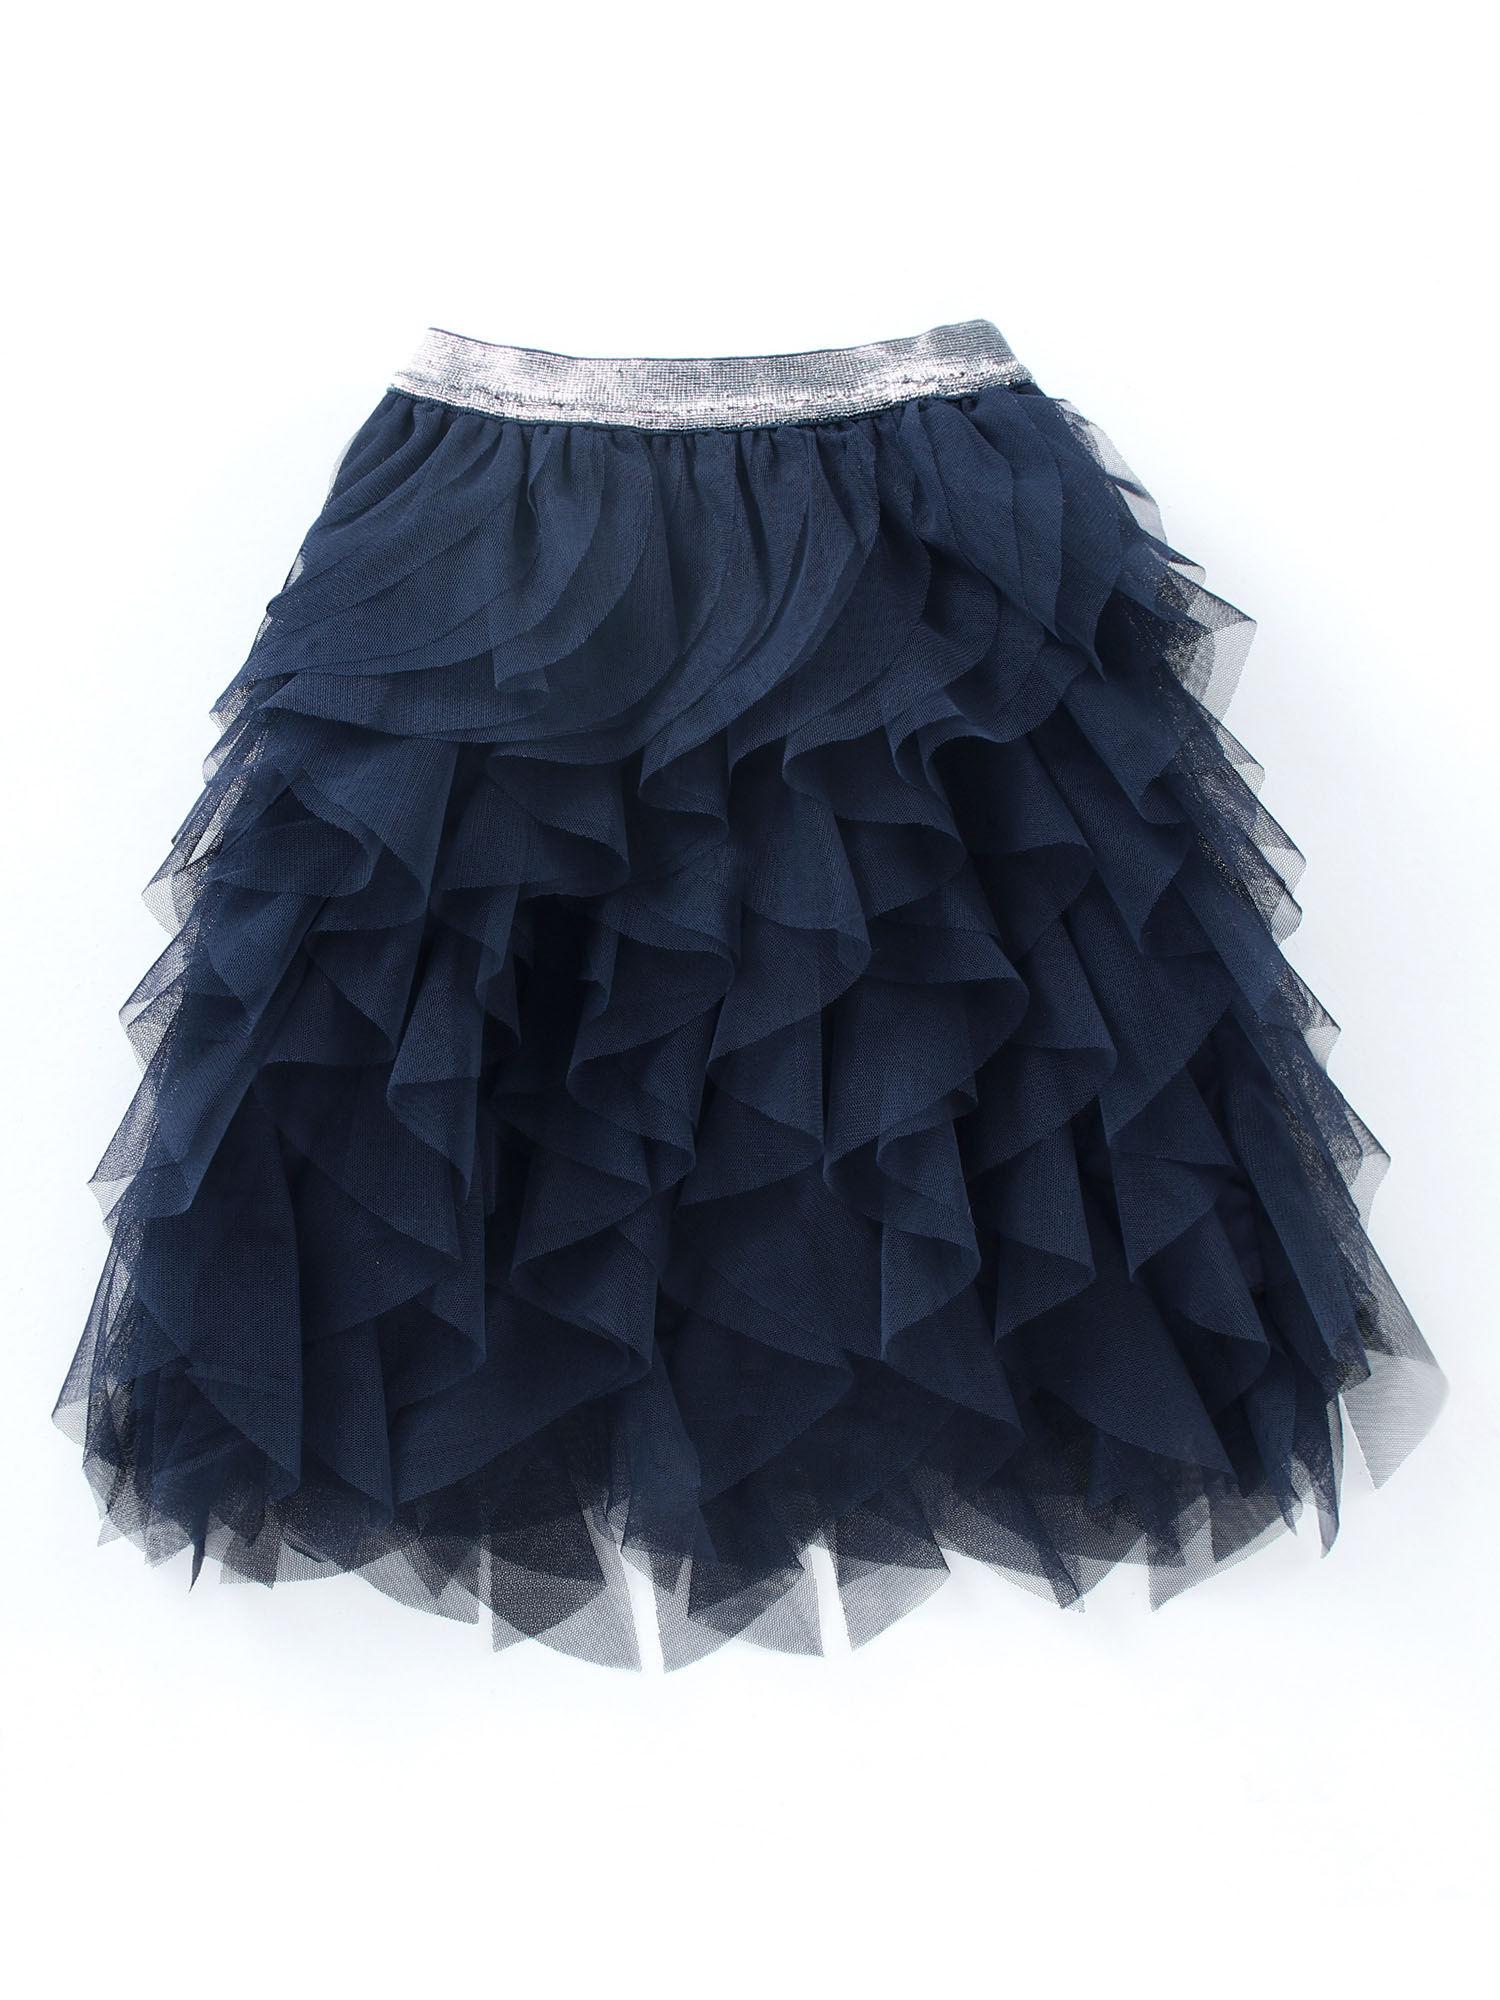 navy blue waterfall tutu skirt